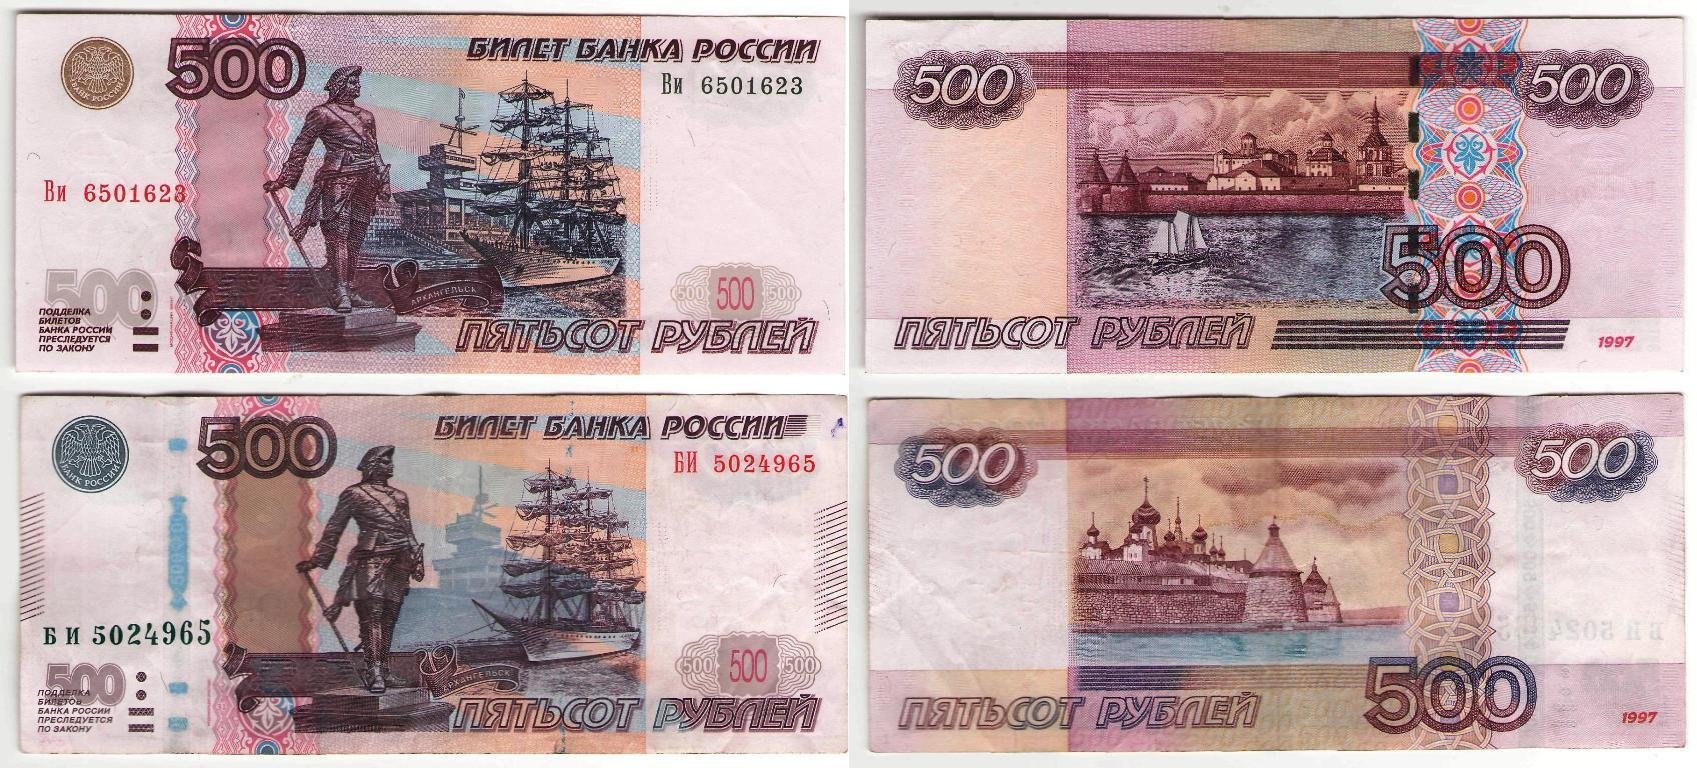 500 рублей по частям. Купюра 500 рублей 1997. 500 Рублей. Деньги печатать. Купюра 500 рублей старого образца.